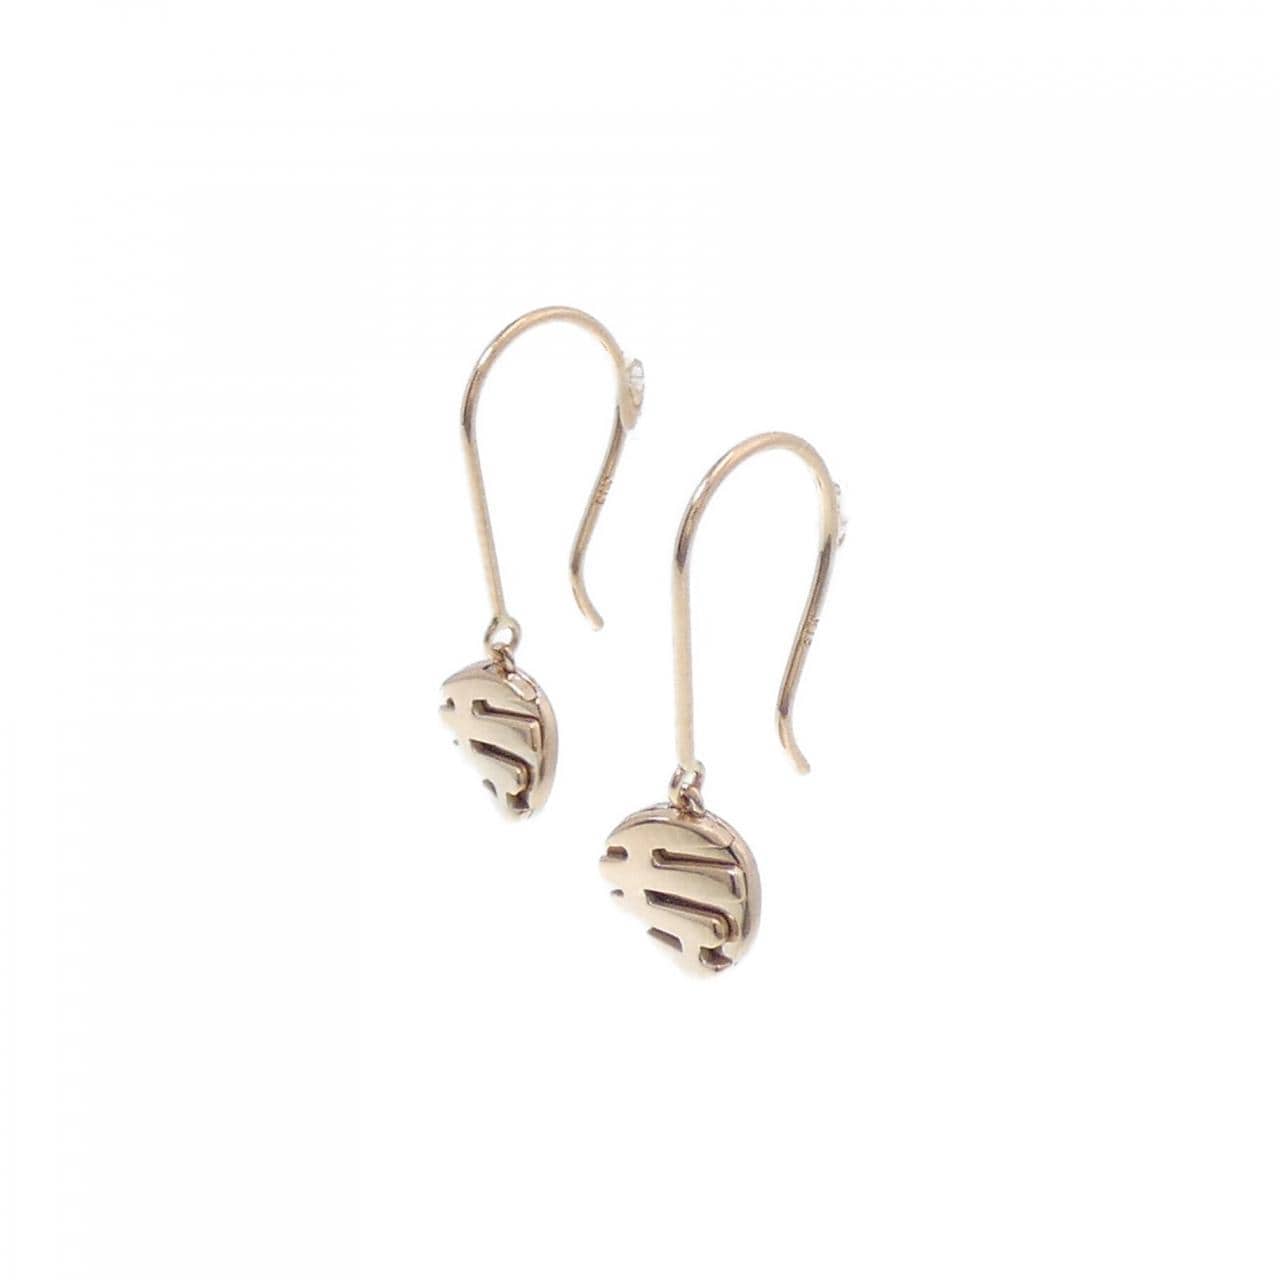 Niwaka K18PG earrings